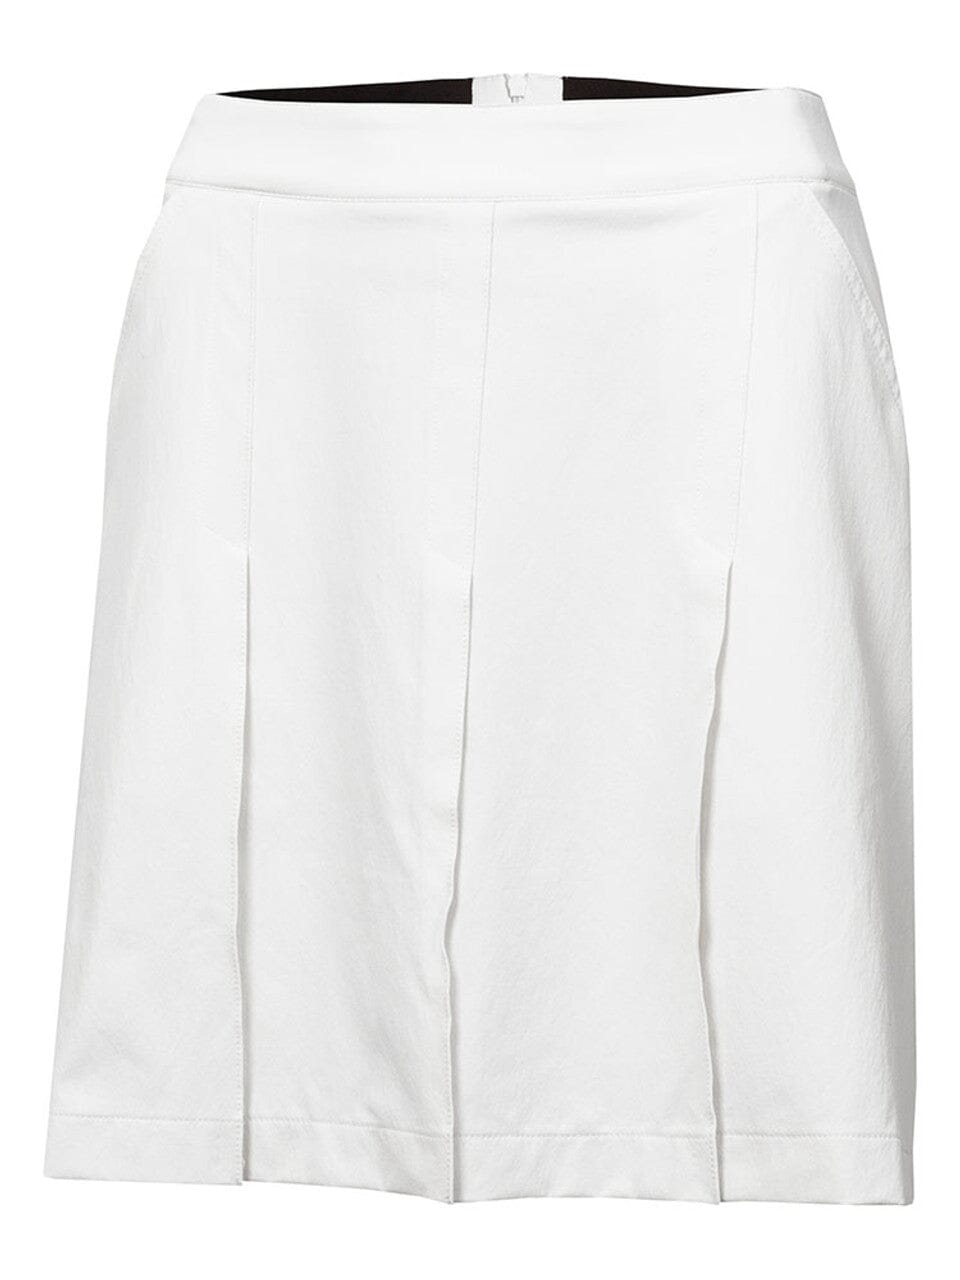 Falda pantalón de golf plisada Hackensack de Calvin Klein ****PRE-ORDEN AHORA**** FALDA CK Calvin Klein